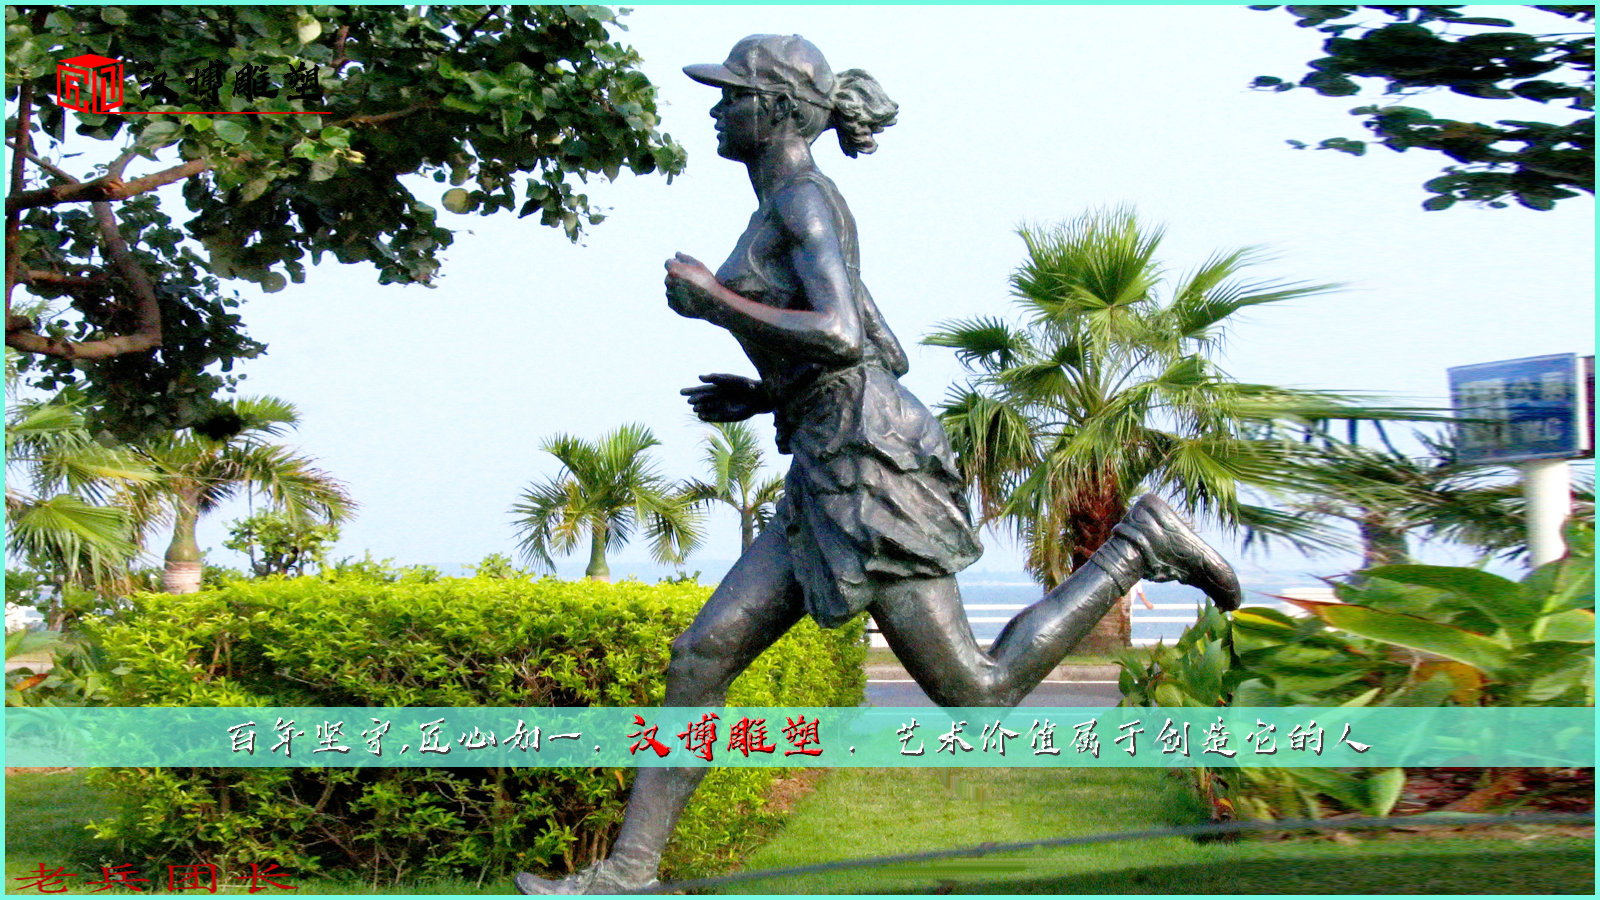 跑步雕塑,校园主题雕像,大型铸铜加工